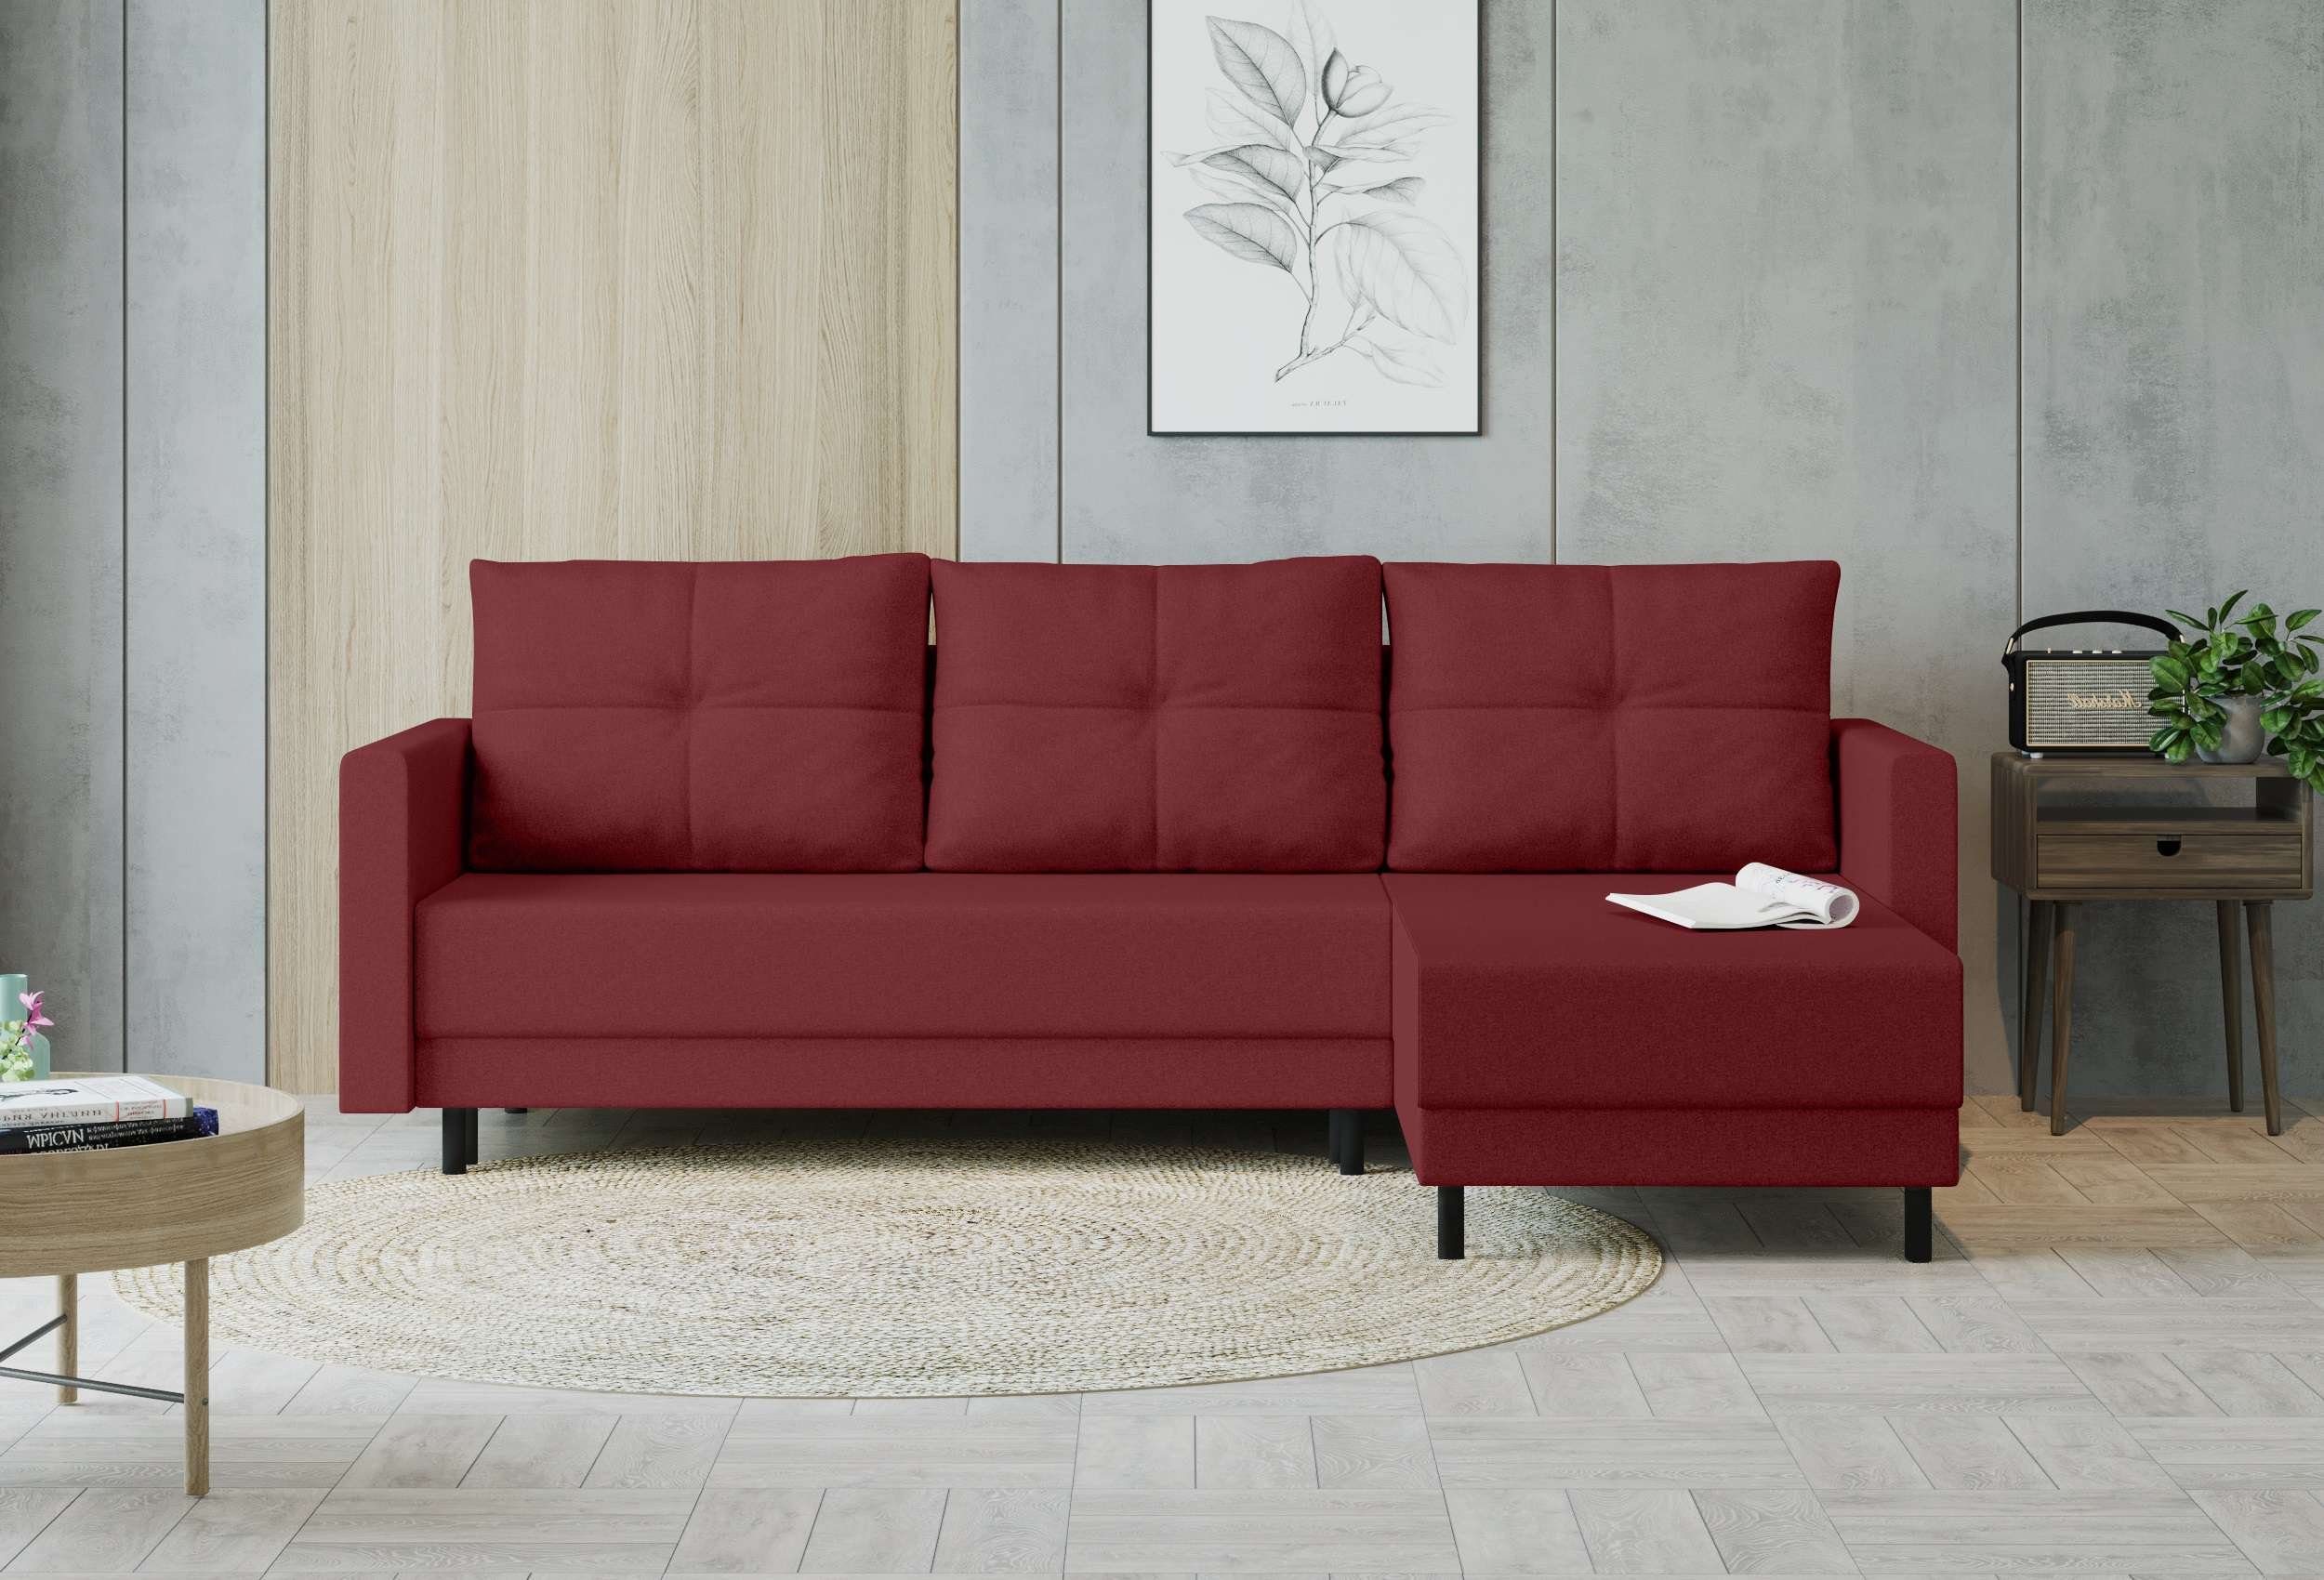 Stylefy Ecksofa Paloma, L-Form, Eckcouch, Sofa, Sitzkomfort, mit Bettfunktion, mit Bettkasten, Modern Design